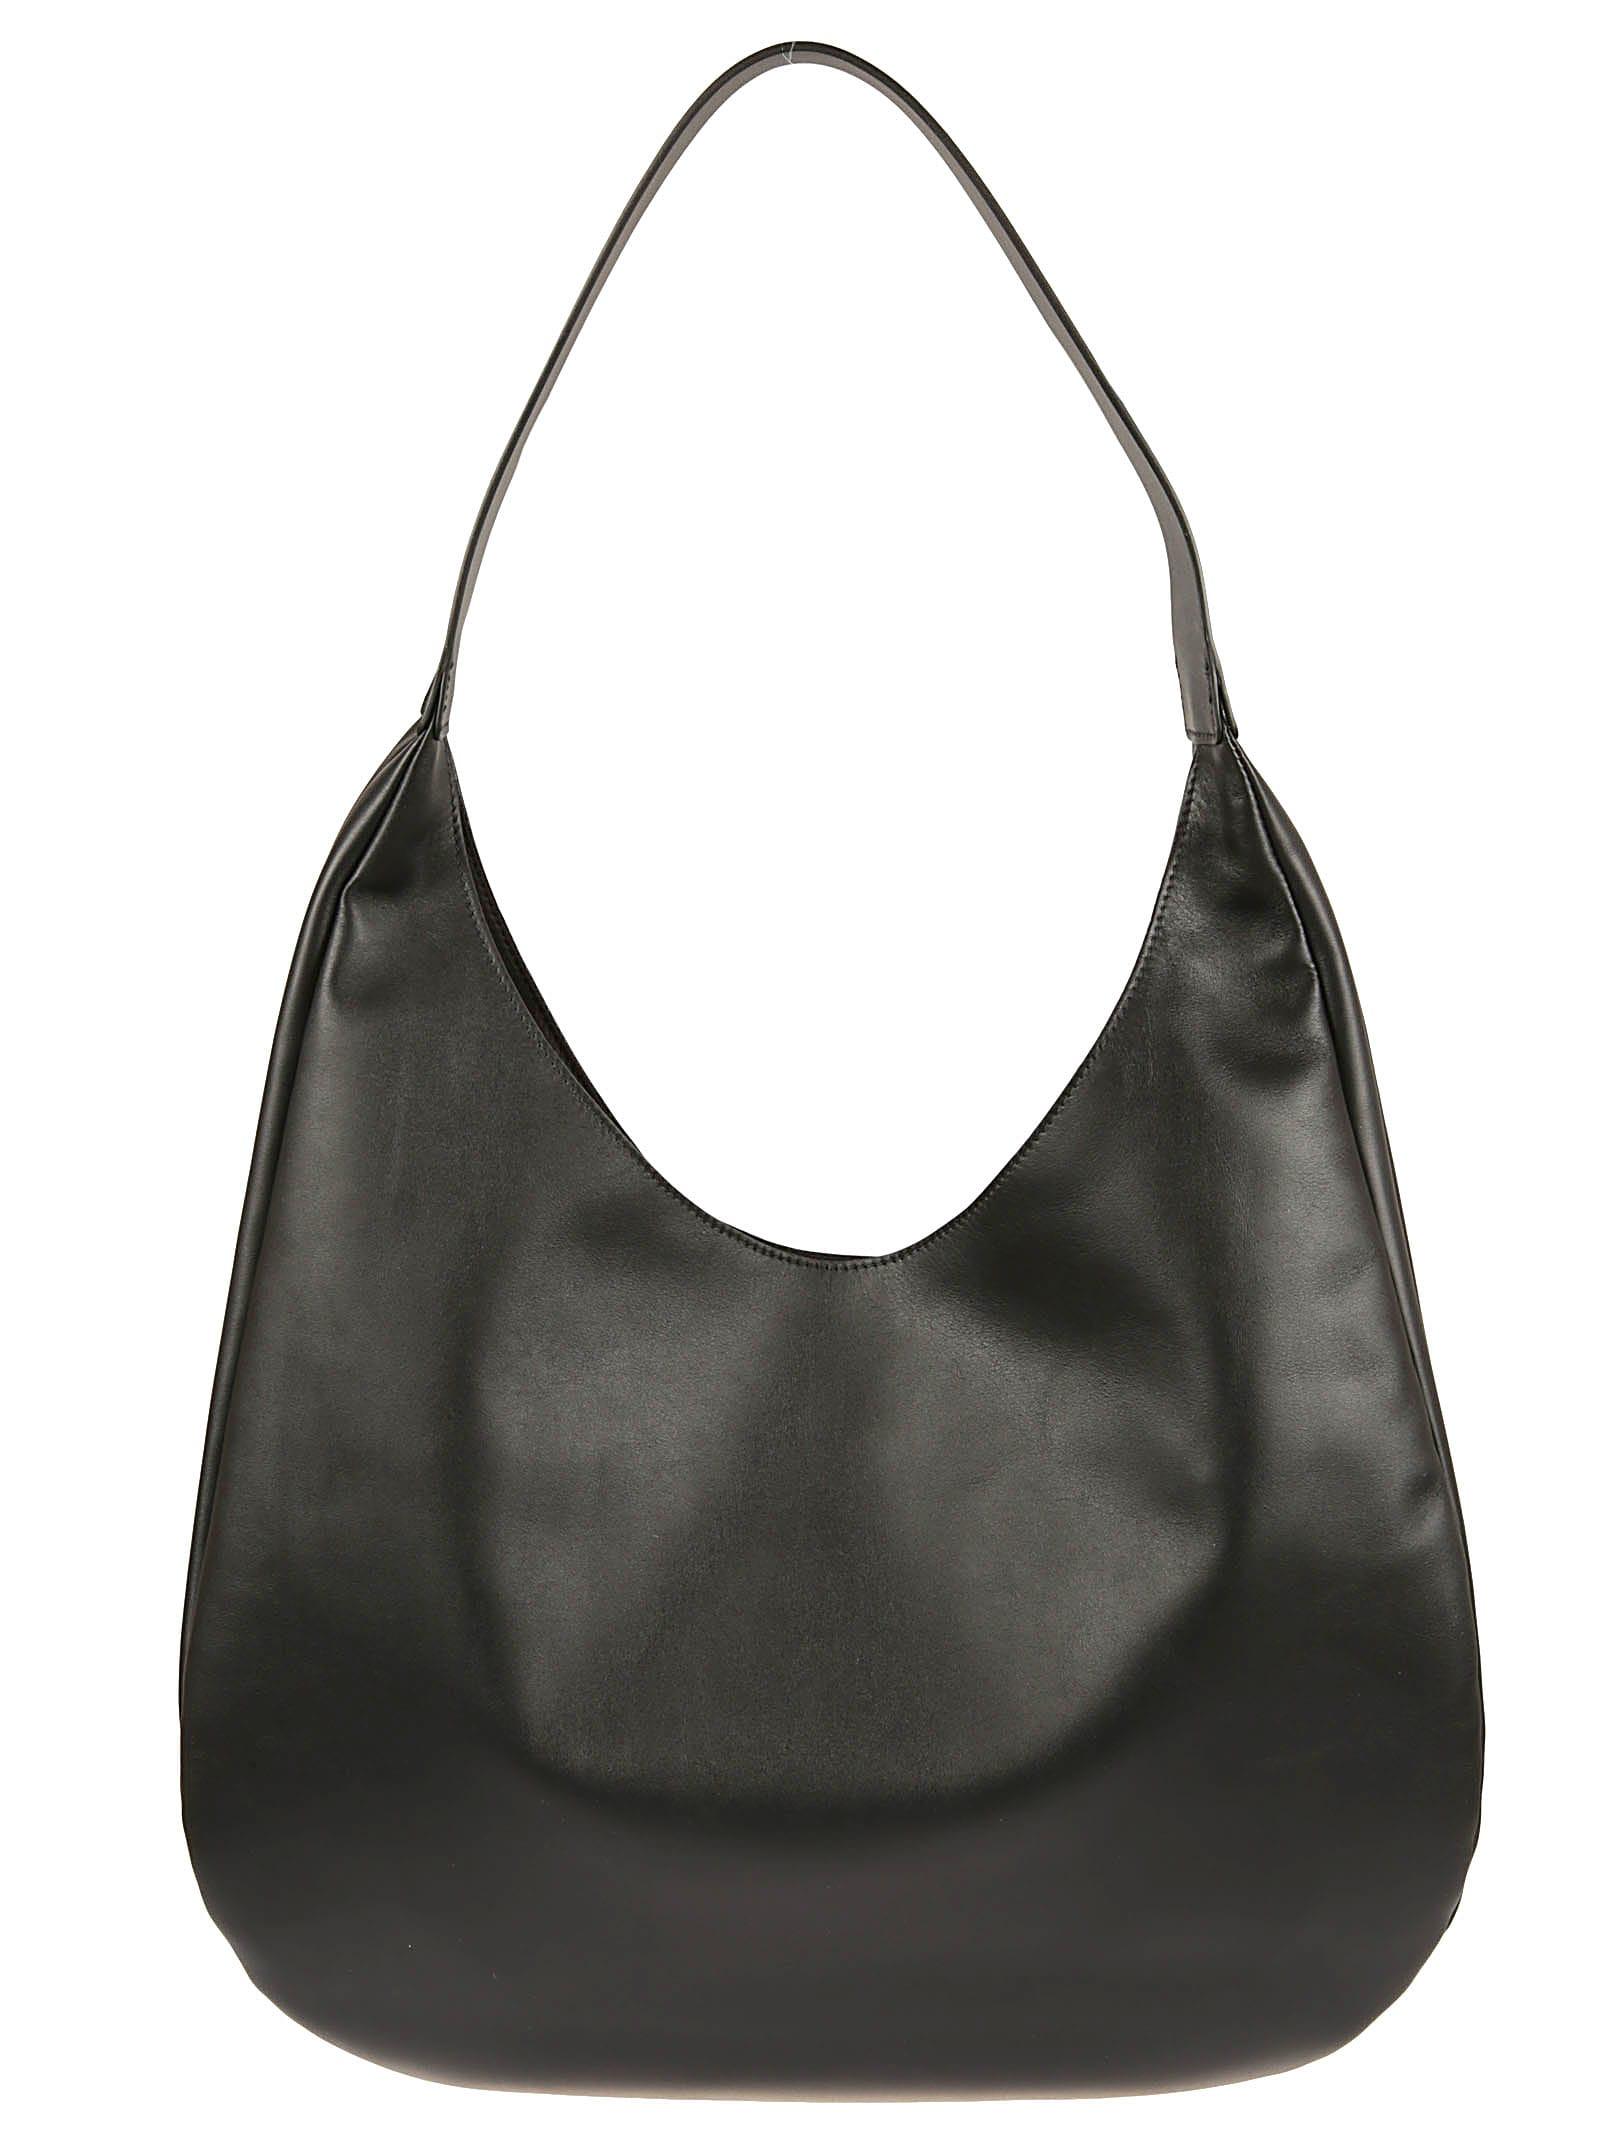 Miu Miu Leather Crossbody Bag - Black Crossbody Bags, Handbags